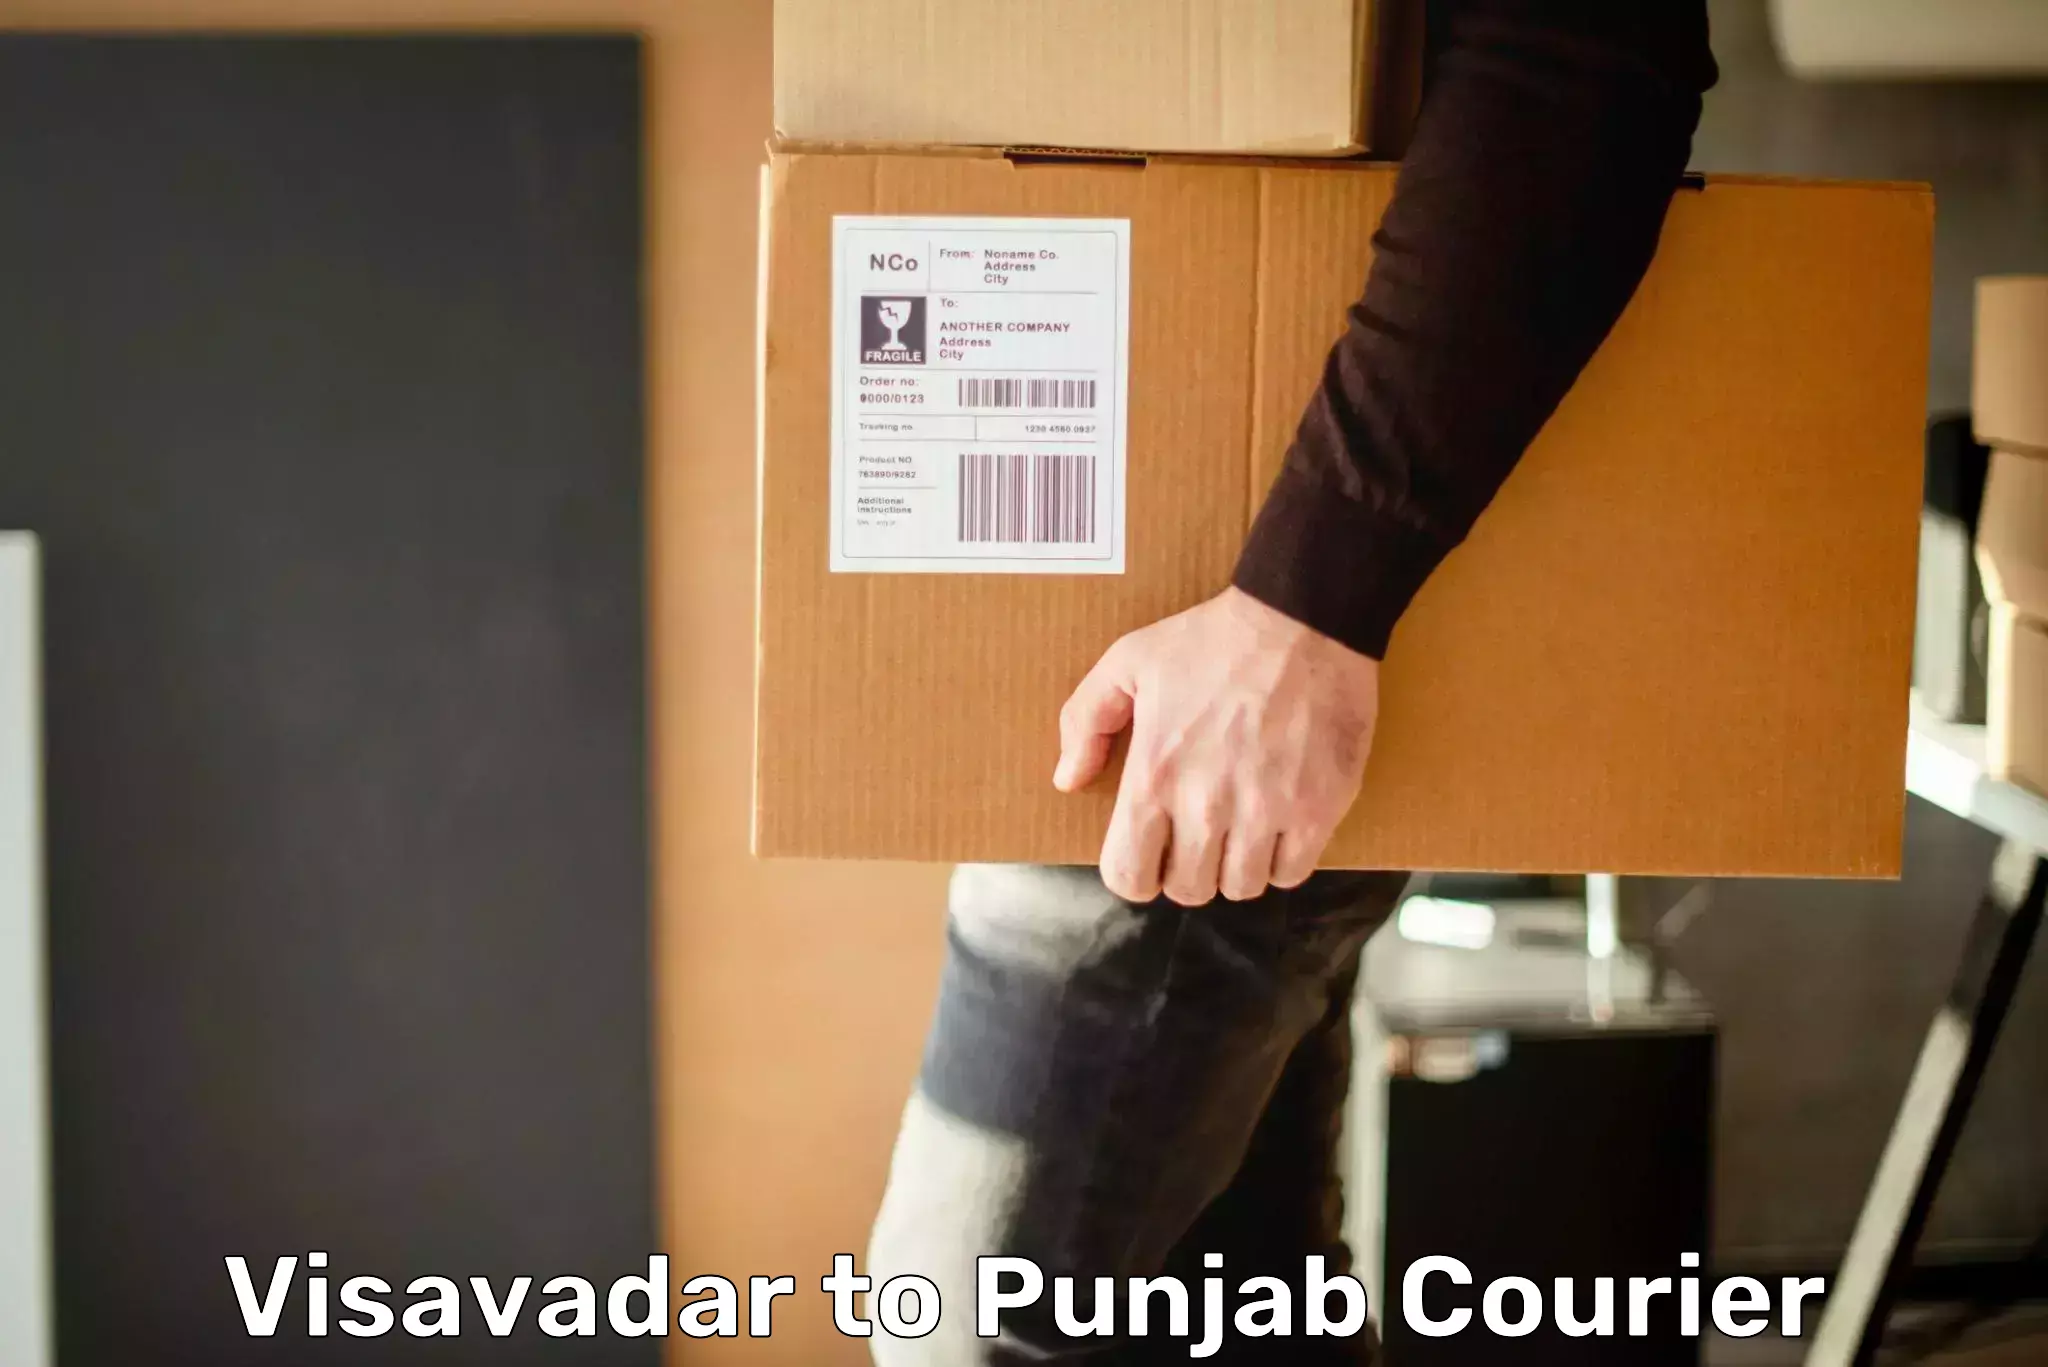 User-friendly courier app Visavadar to Amritsar